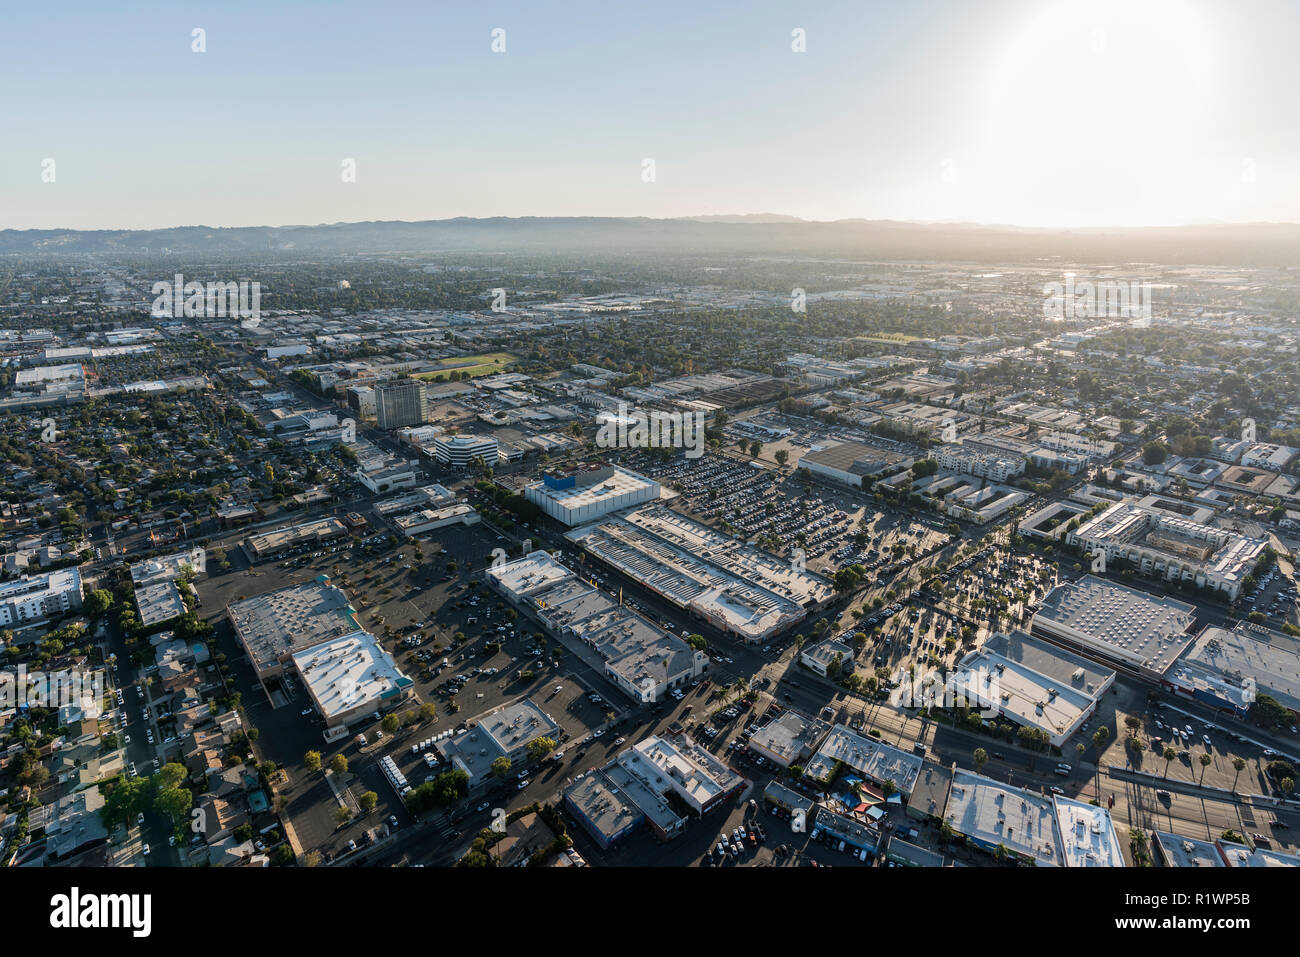 Los Angeles, Californie, USA - 21 octobre 2018 : Après-midi vue aérienne vers les foyers et les entreprises près de Van Nuys Blvd dans la vallée de San Fernando. Banque D'Images